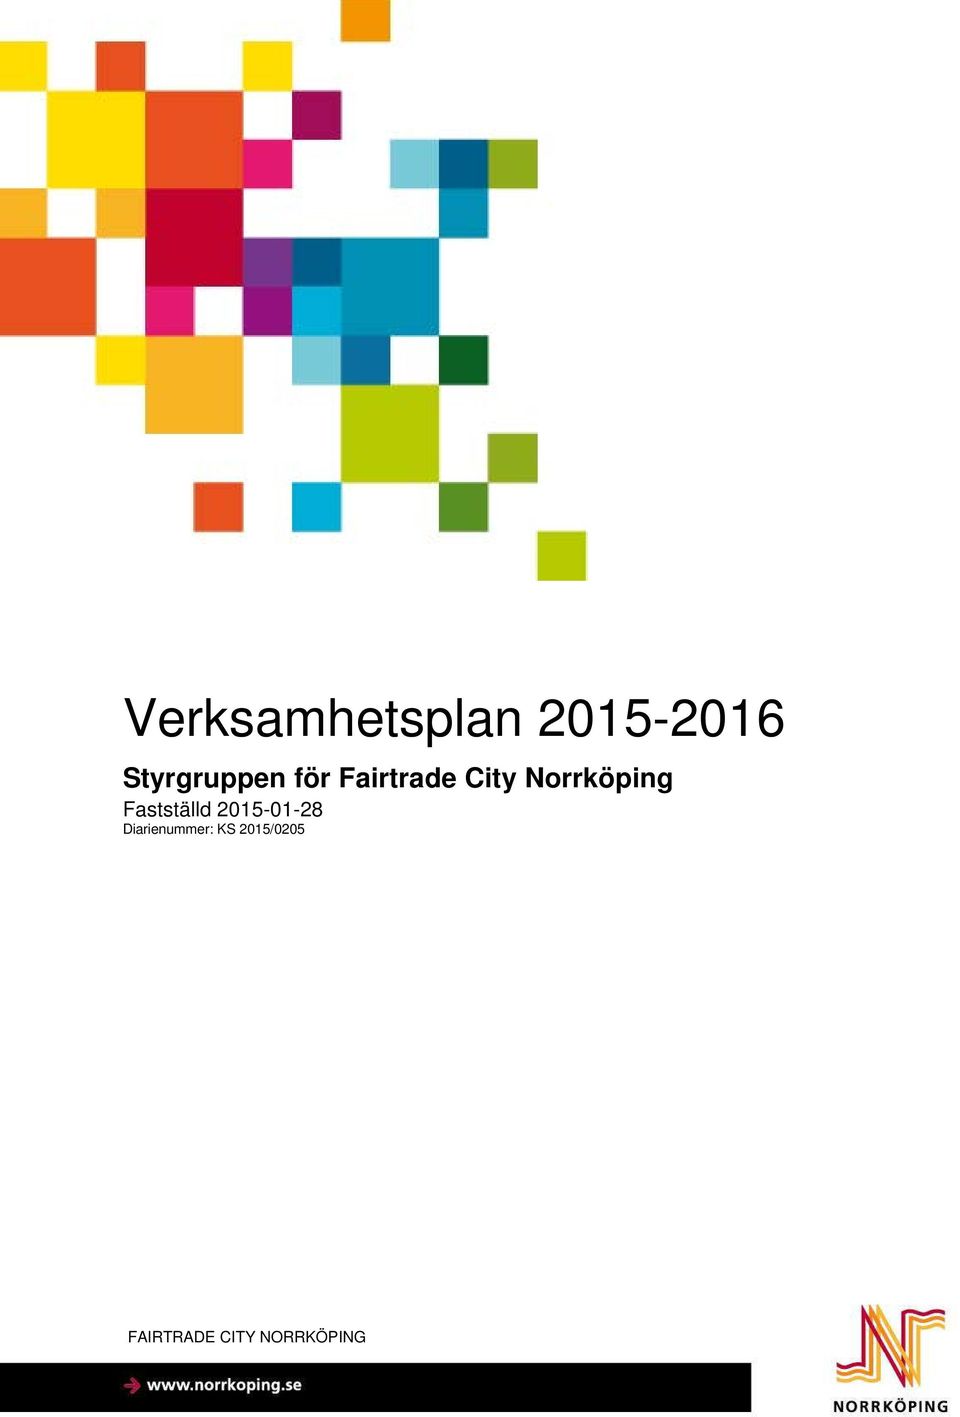 Norrköping Fastställd 2015-01-28